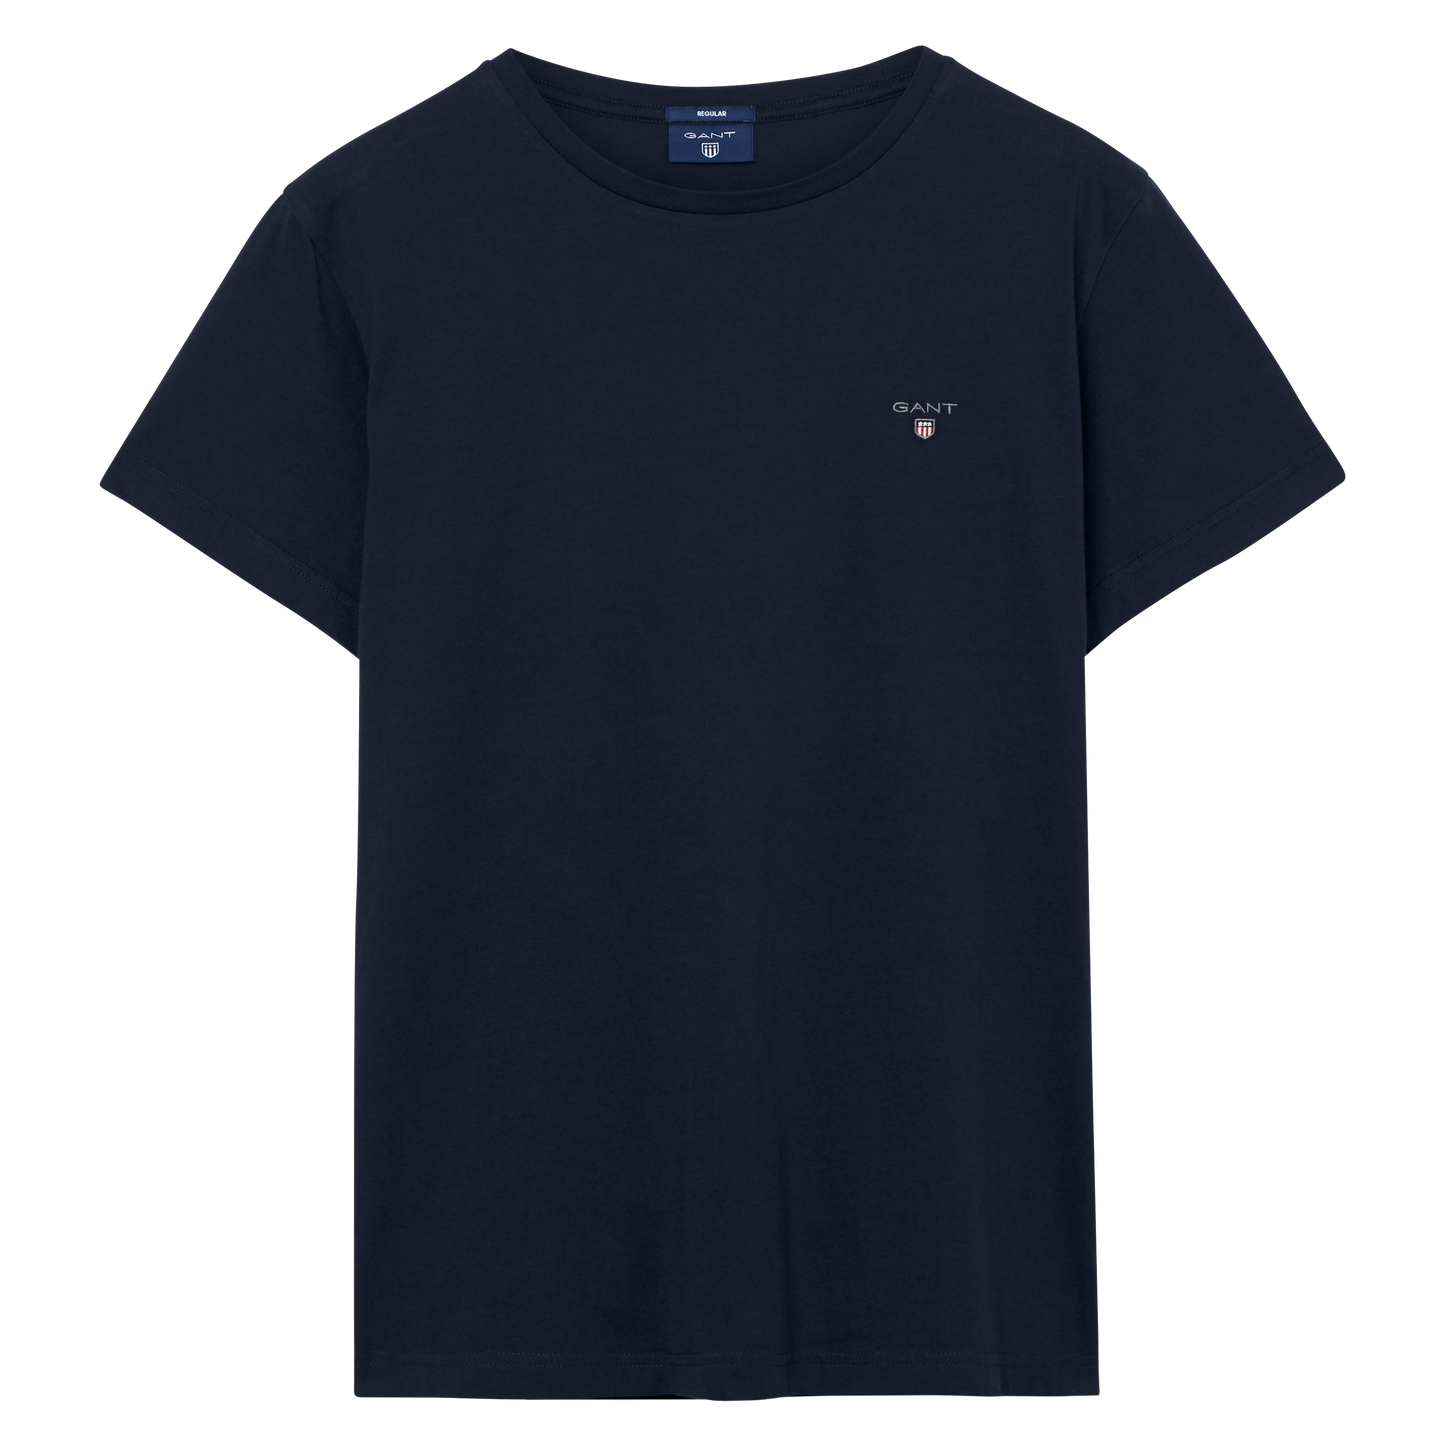 Gant Jersey in regular Classic fit.   The Original Short Sleeve T-Shirt     , chosen in a Evening Blue colour